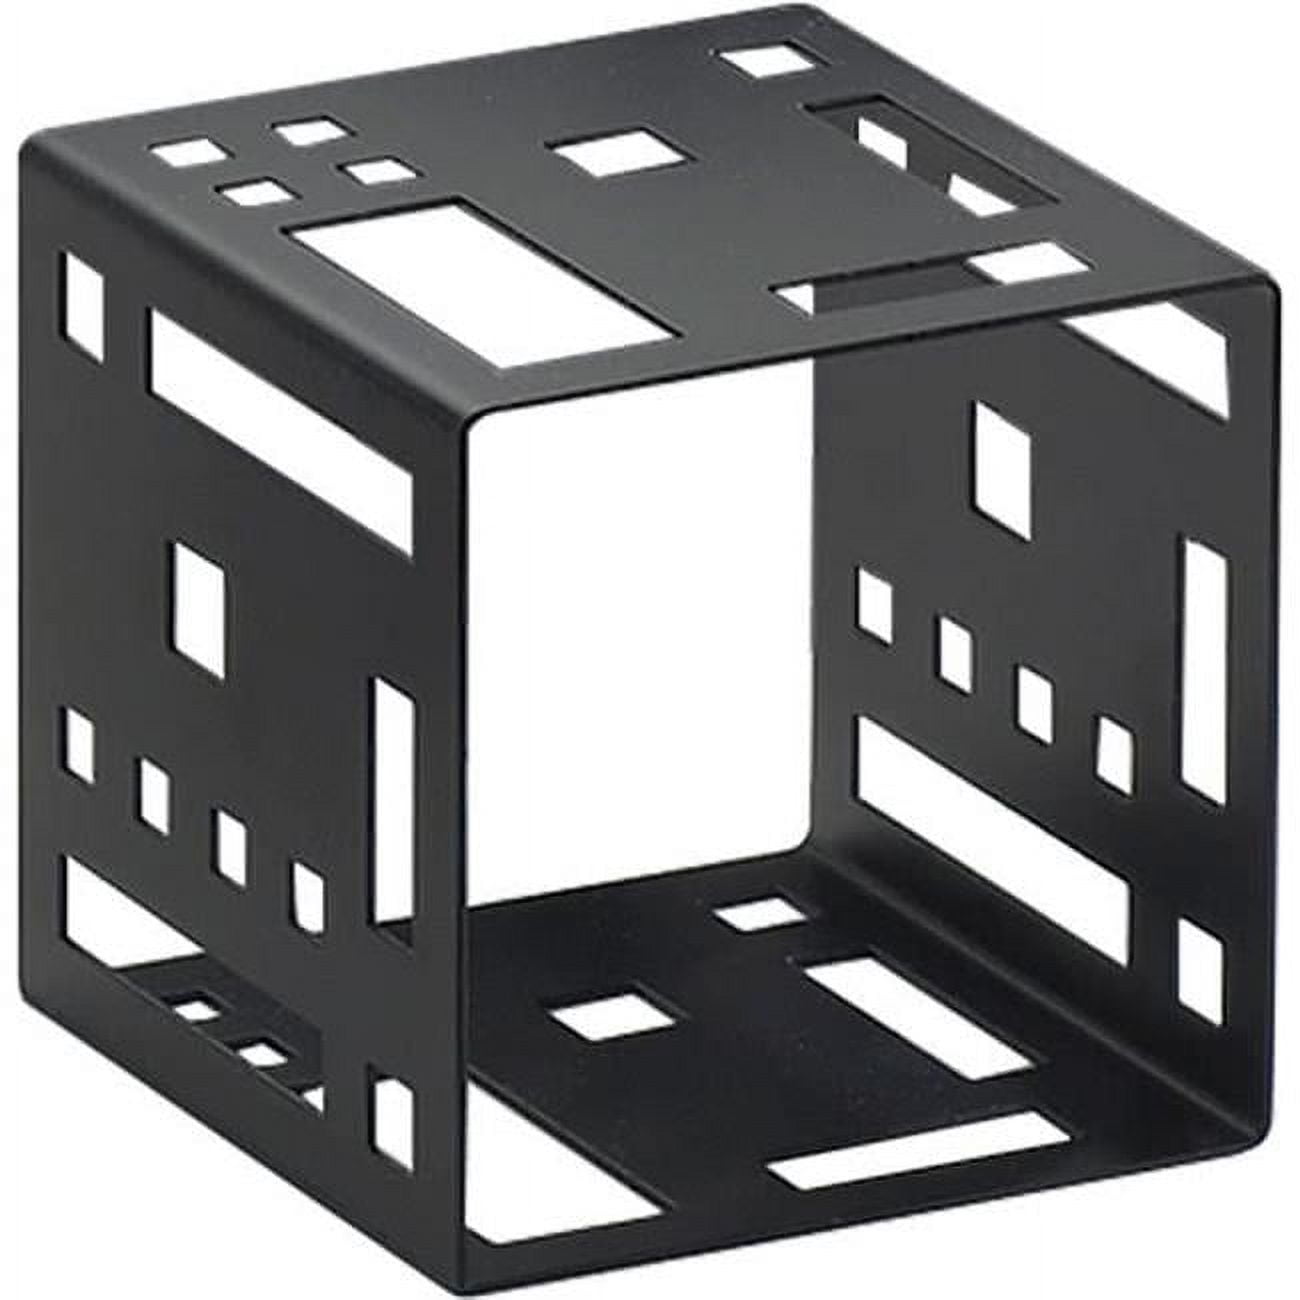 1607-5-13 Squared Cube Riser, Black - 5 X 5 X 5 In.